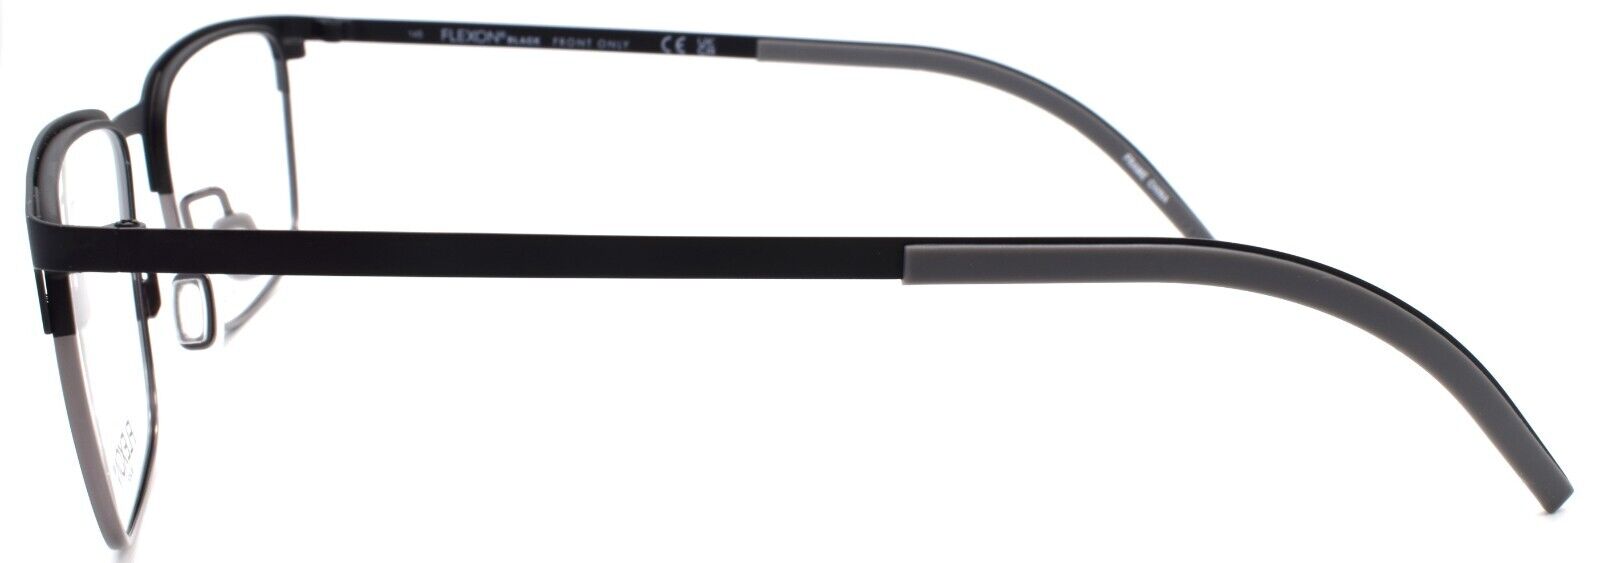 3-Flexon B2034 002 Men's Eyeglasses Matte Black 54-18-145 Flexible Titanium-883900208178-IKSpecs